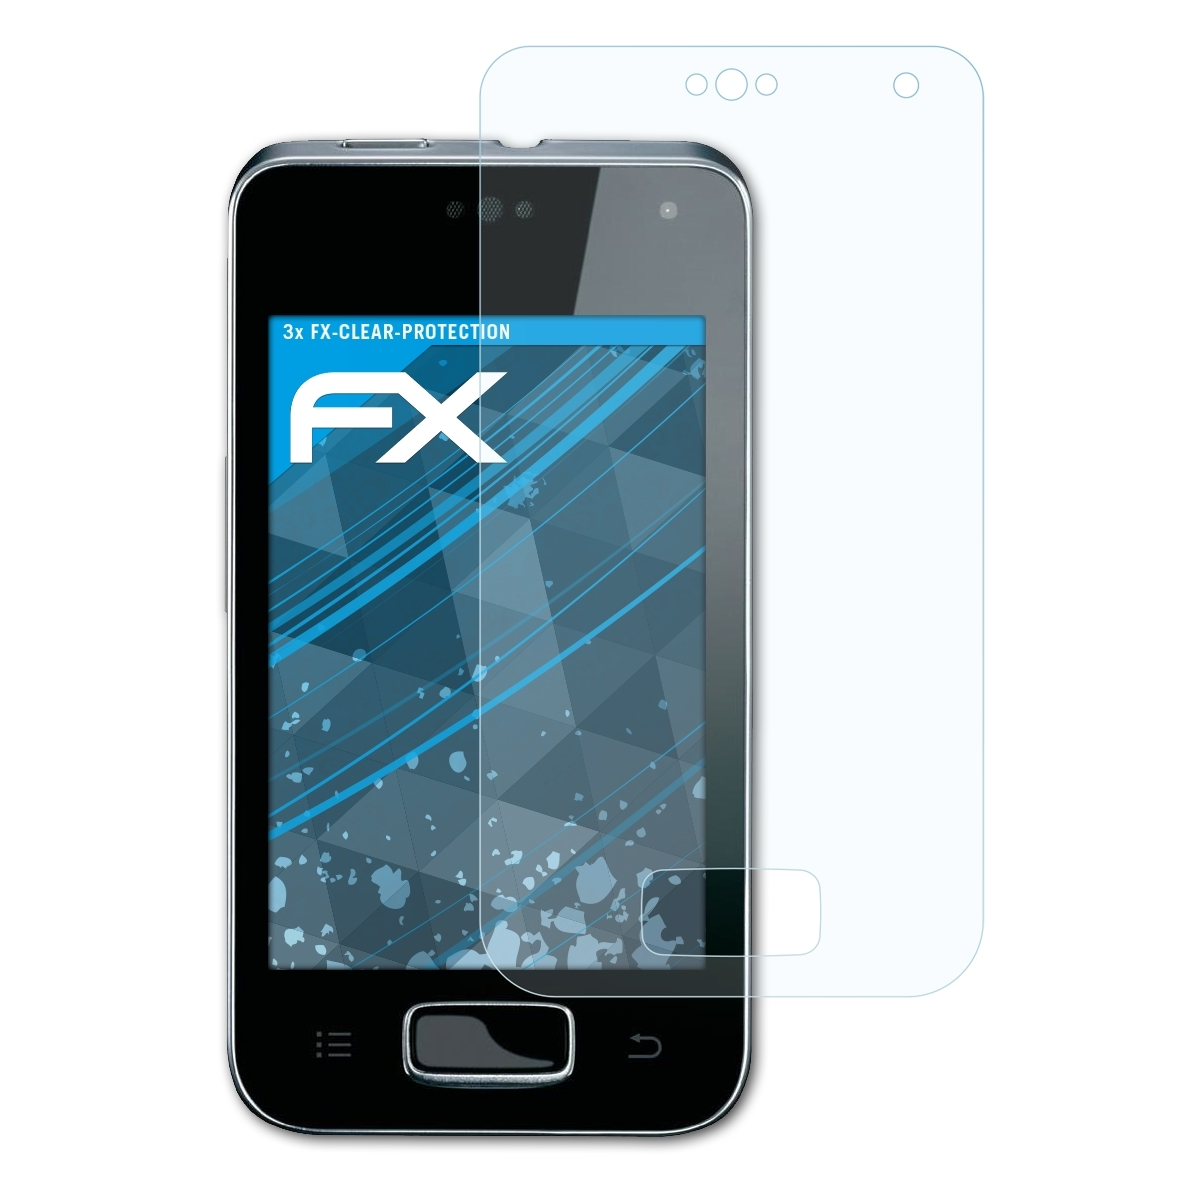 ATFOLIX Displayschutz(für KX-PRX120) 3x Panasonic FX-Clear